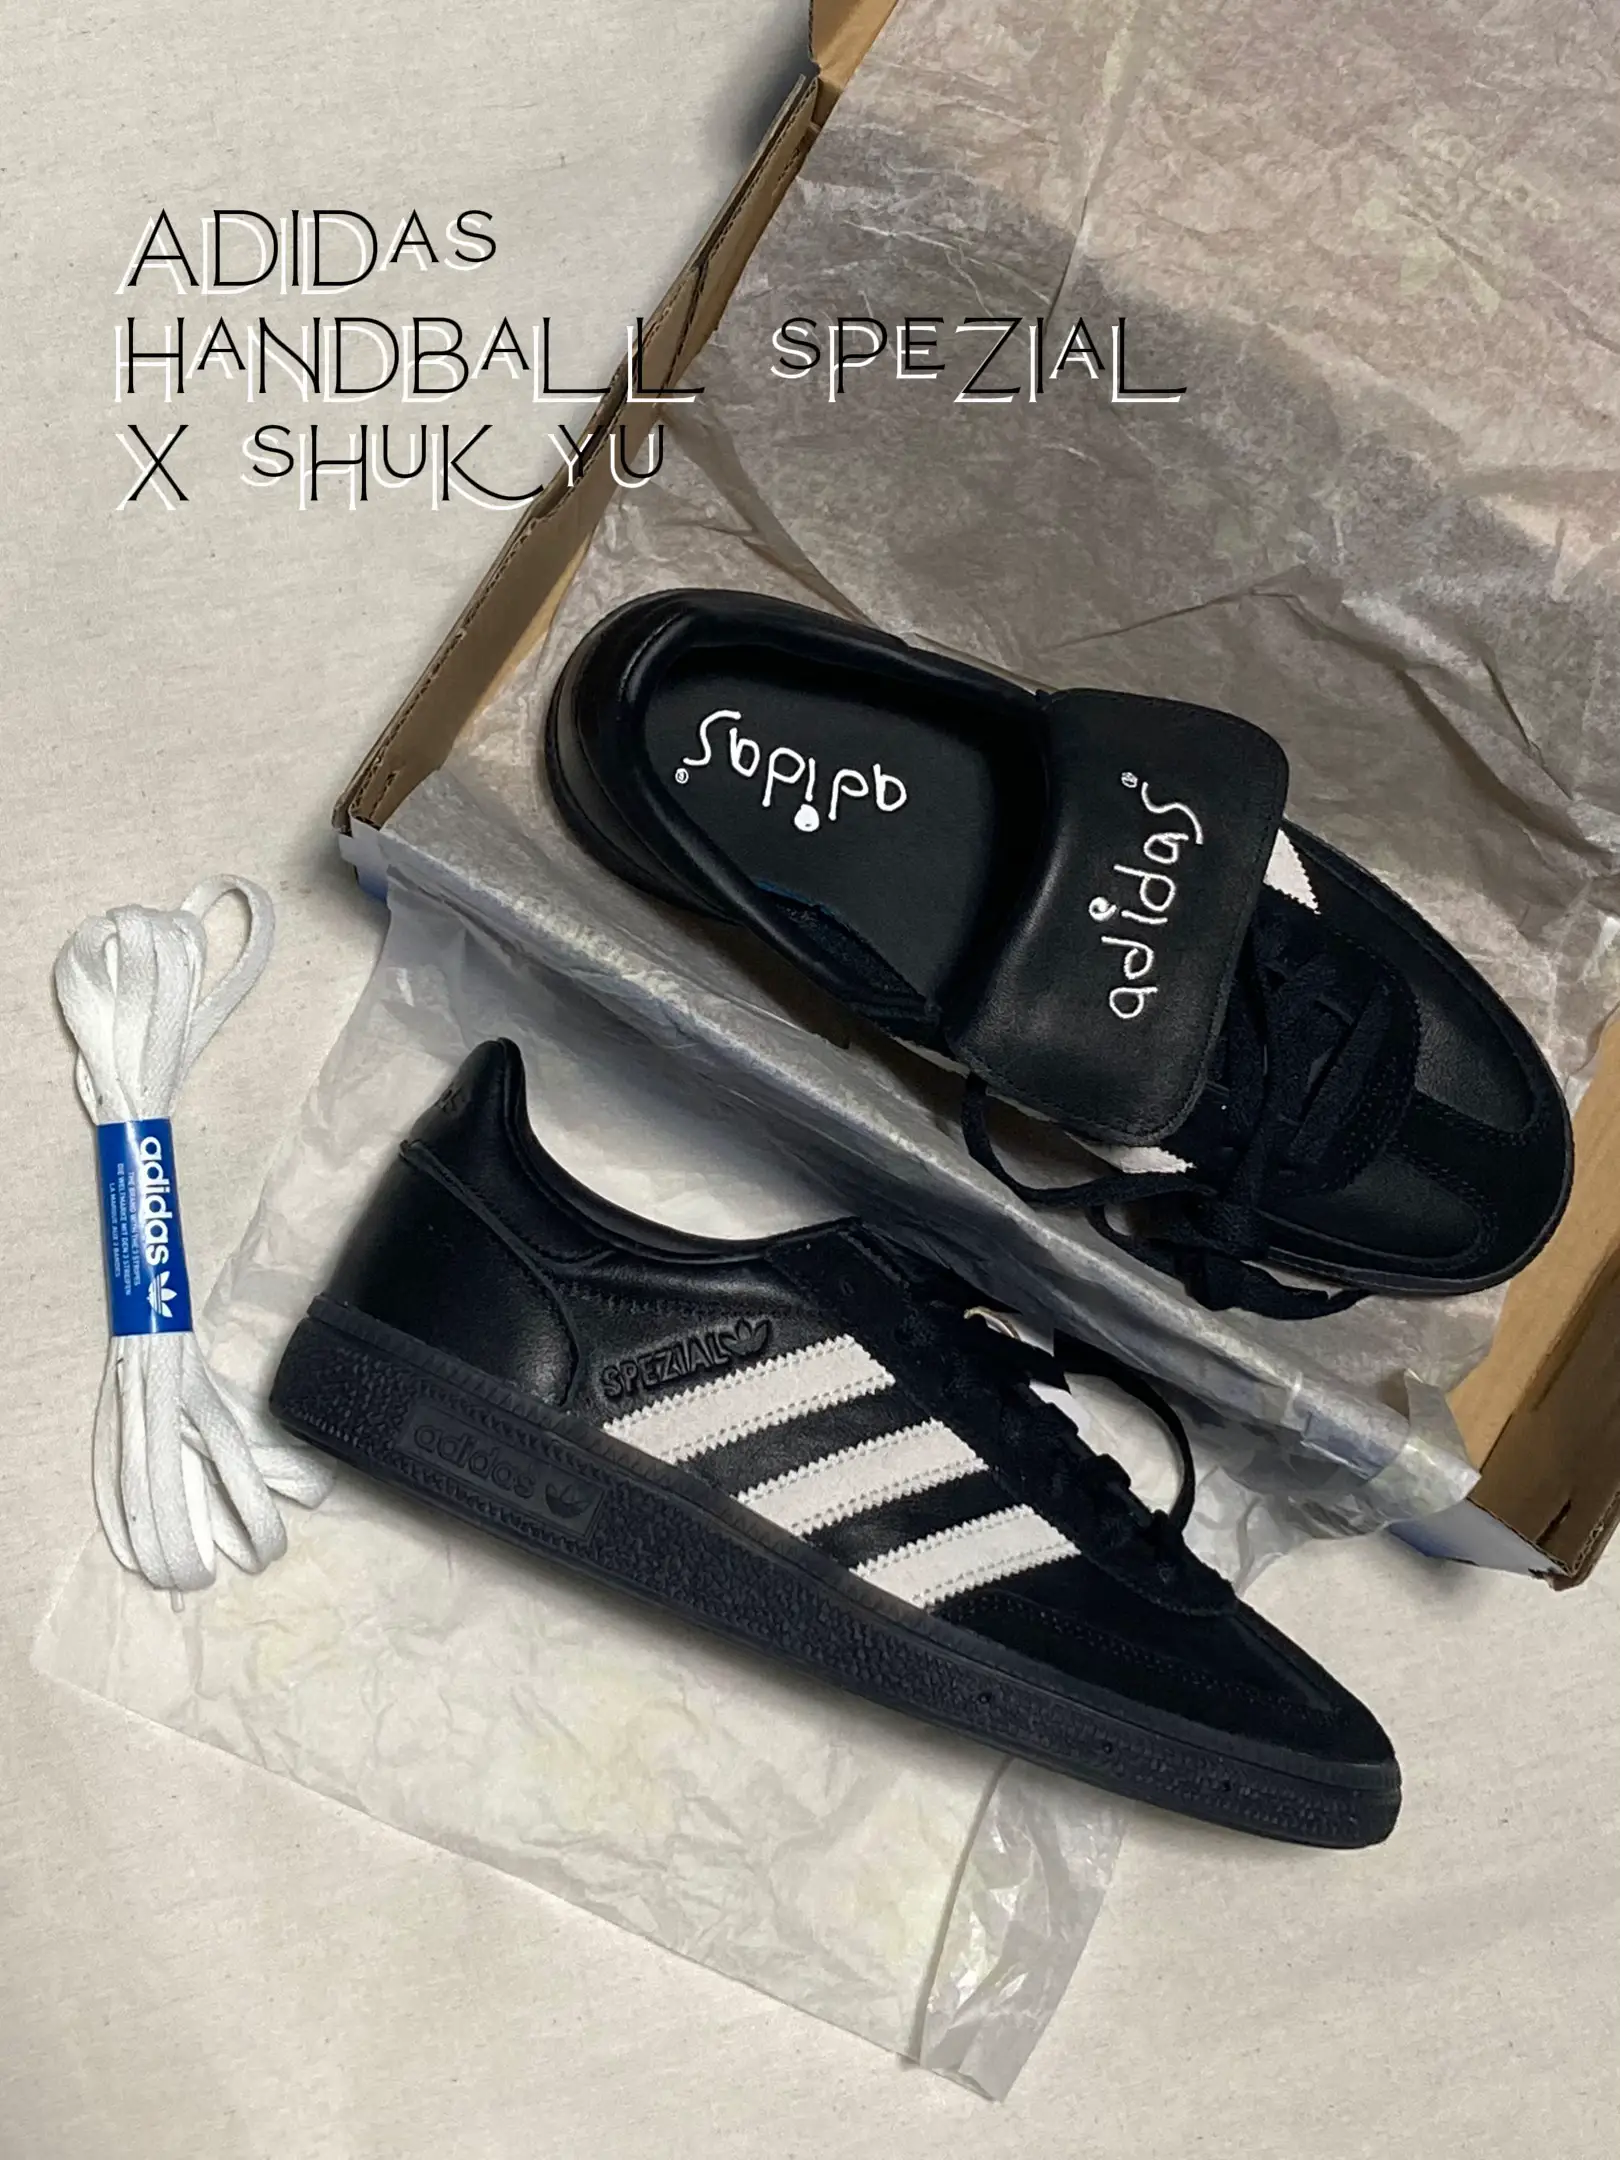 Adidas Handball Spezial x Shukyu The Best Of Rare 👀✨   | Gallery